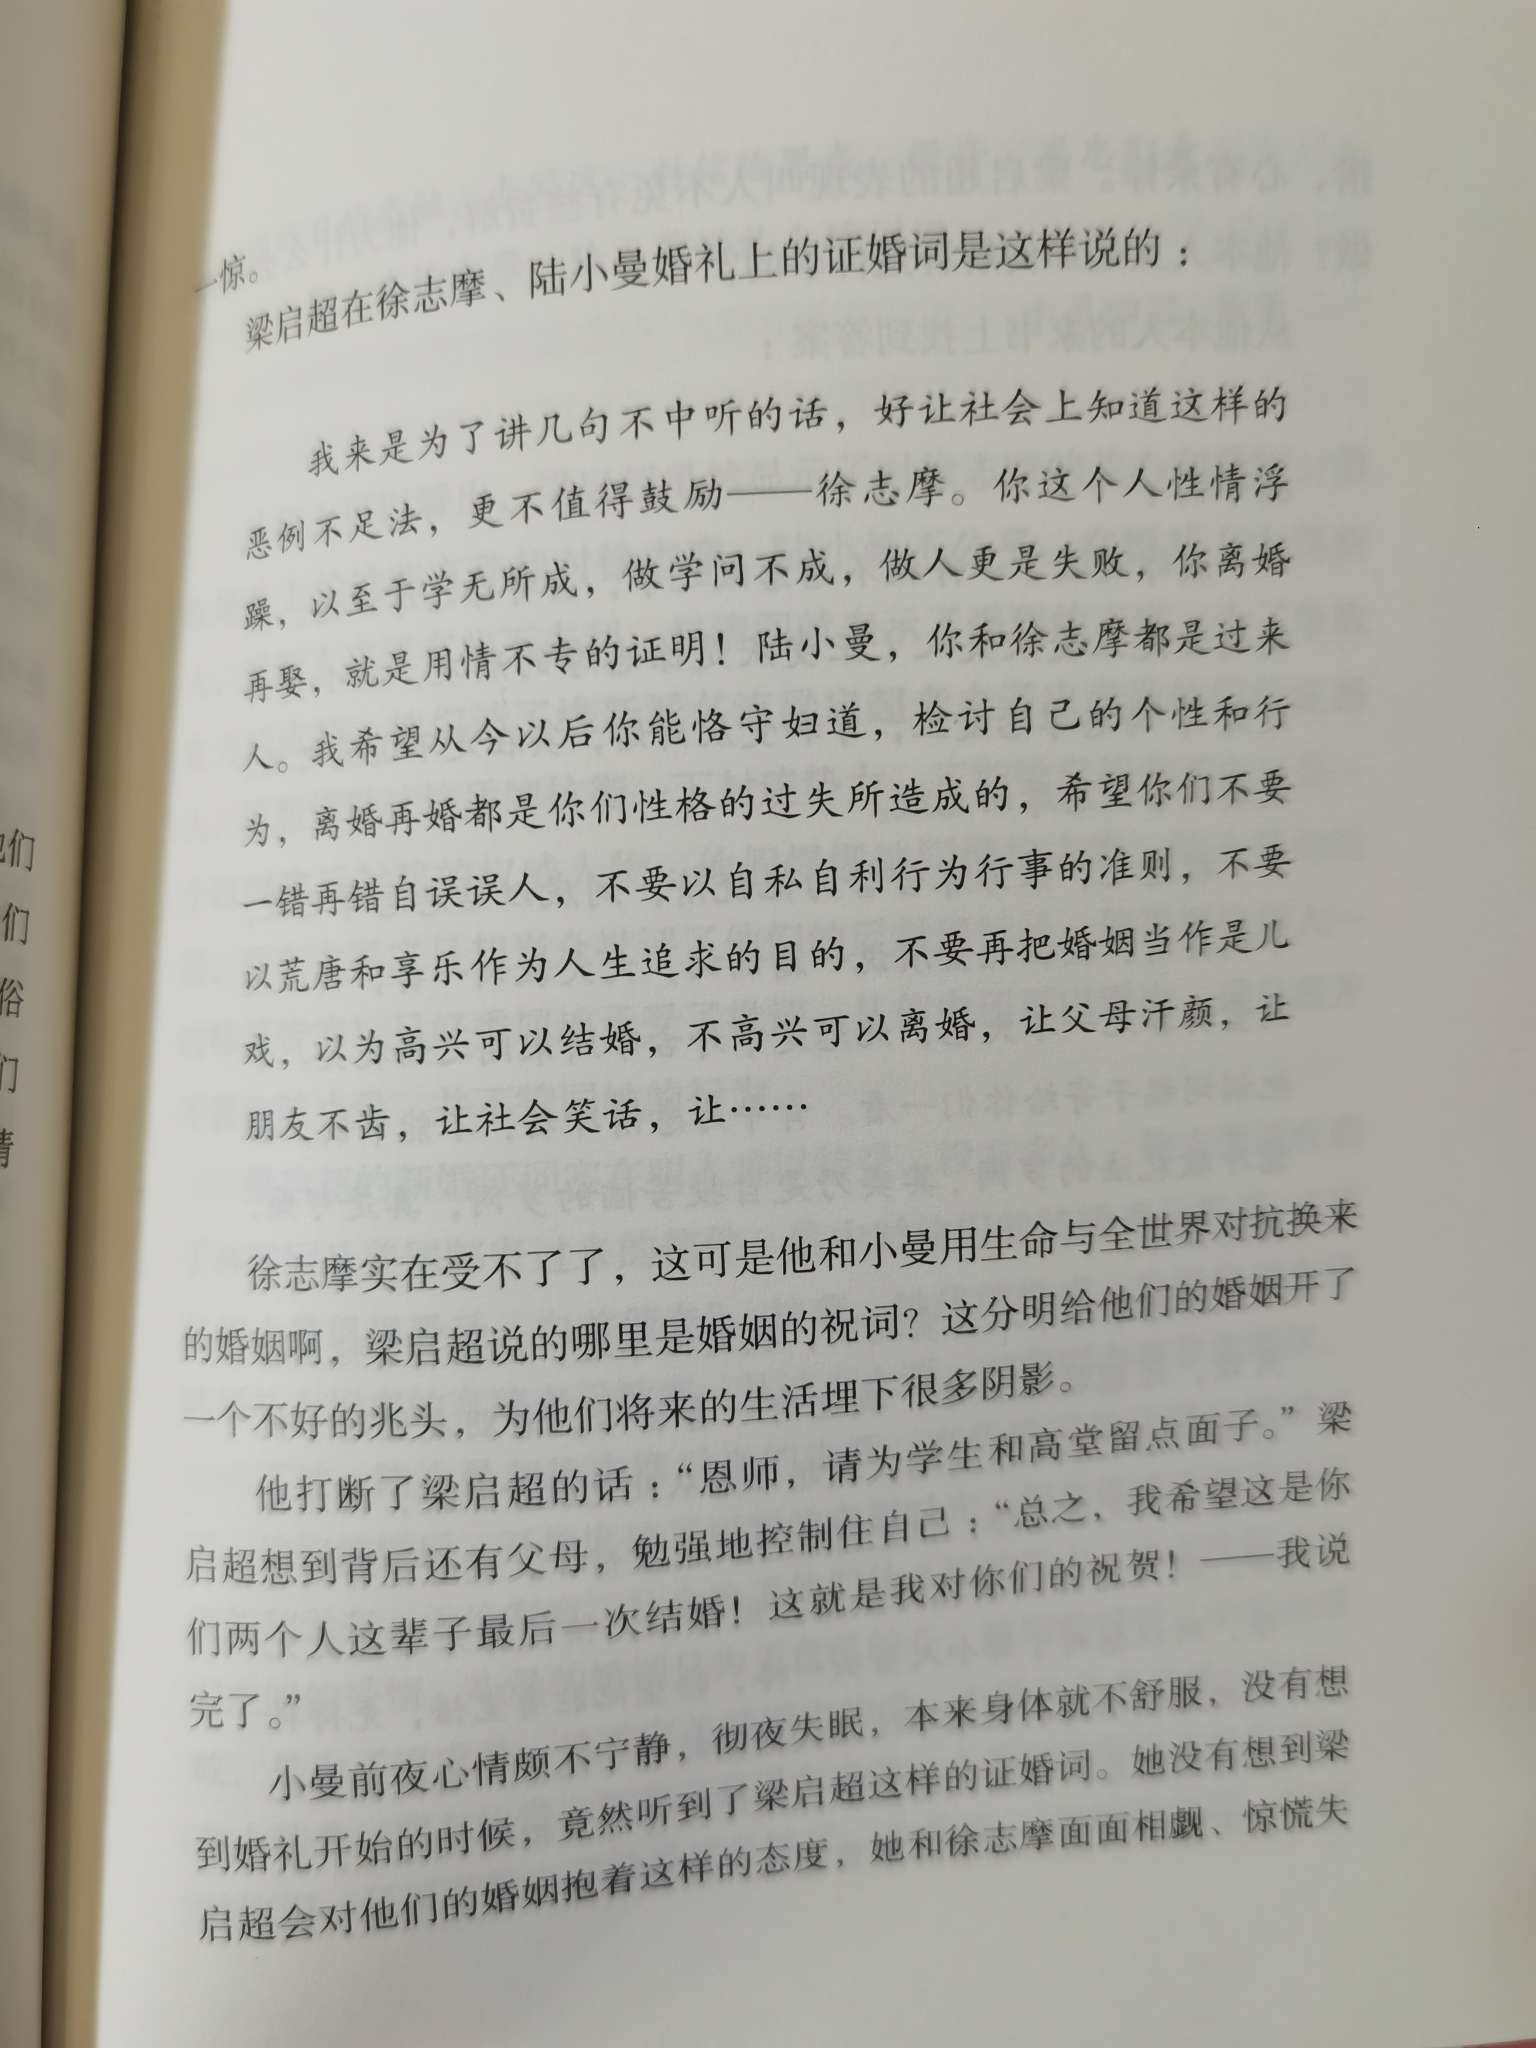 陆小曼,文学,徐志摩,读书